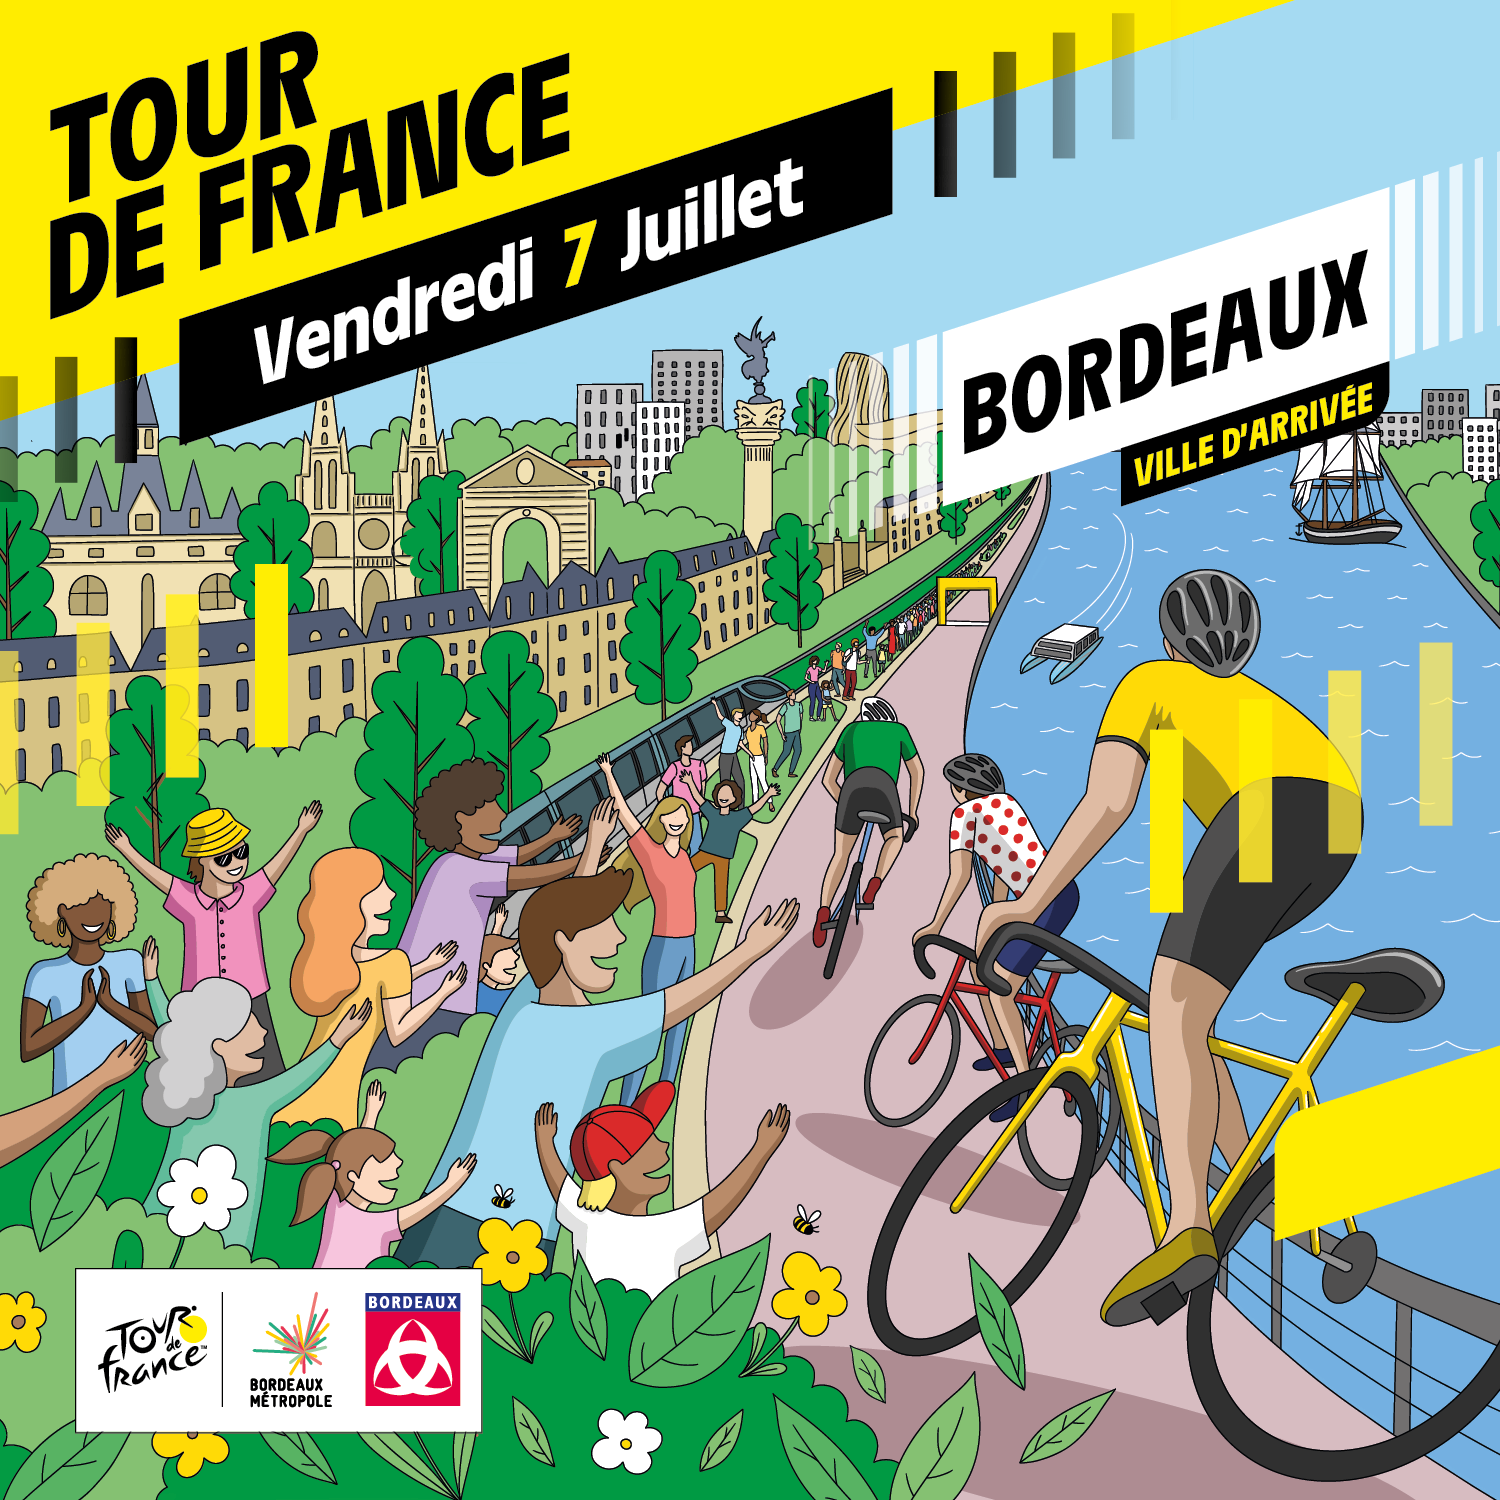 Les 5 activités incontournables du Tour de France à Bordeaux